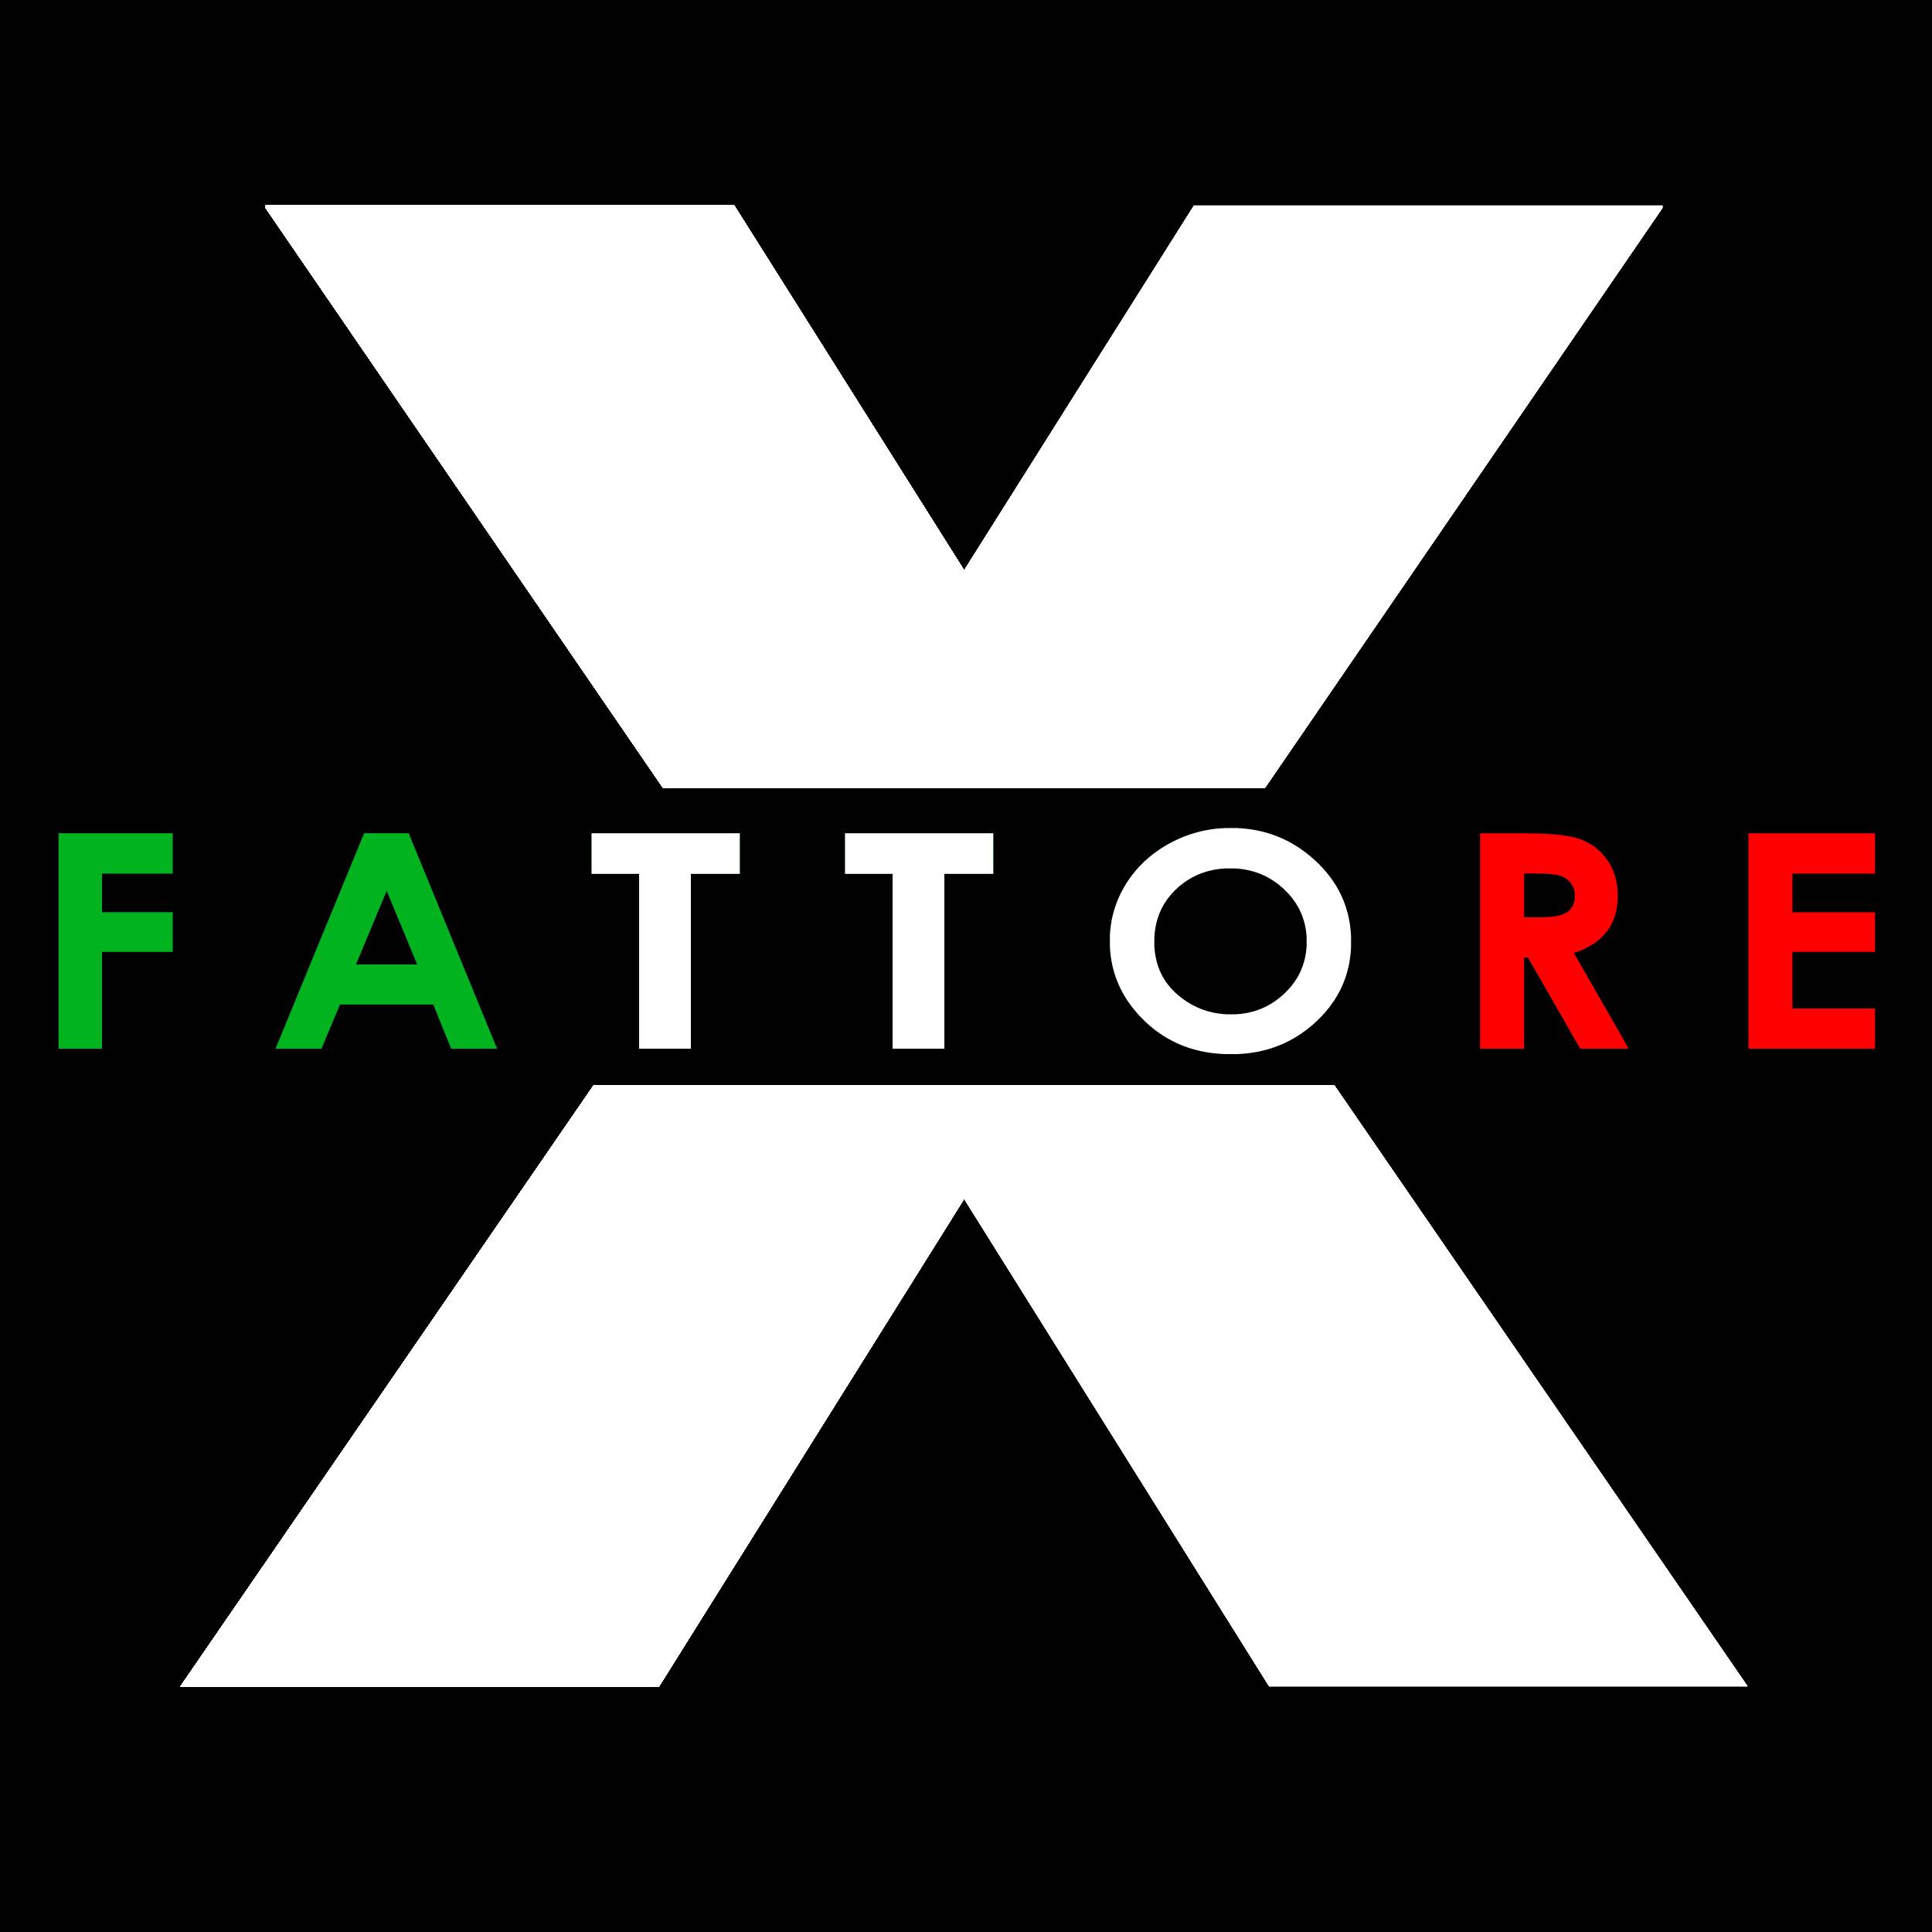 FATTORE X